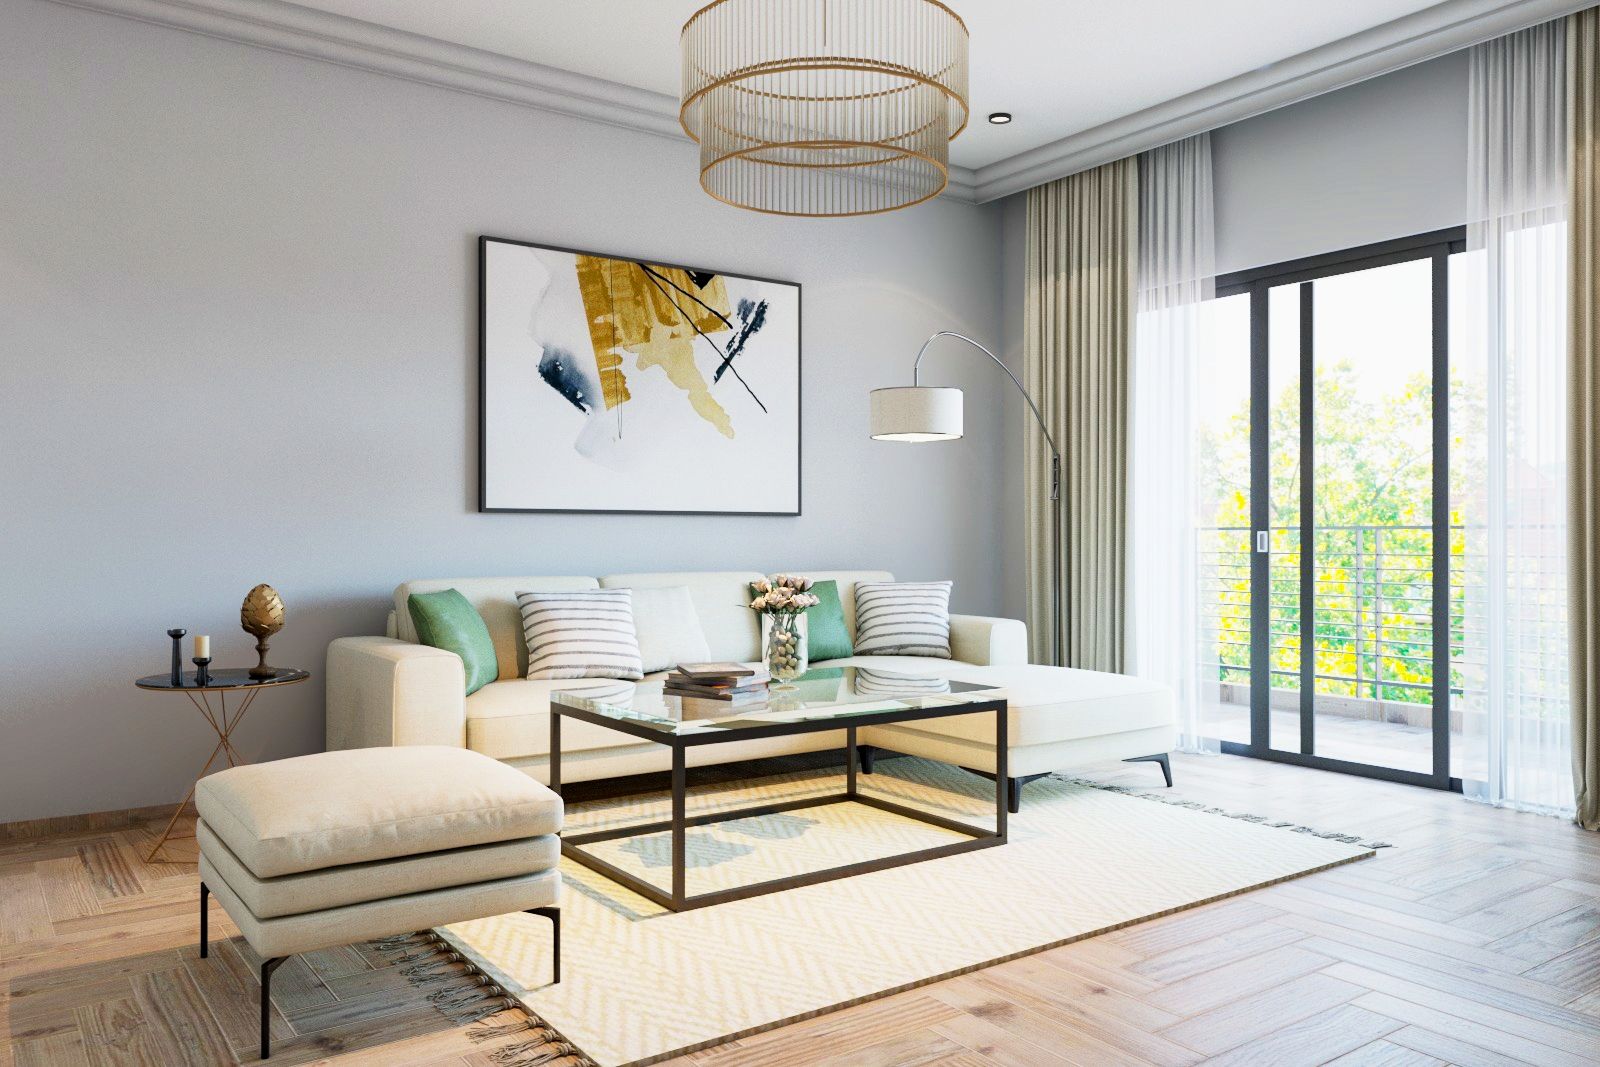 Living Room Design | Hdb Living Room Interior Design Ideas In Singapore -  Livspace